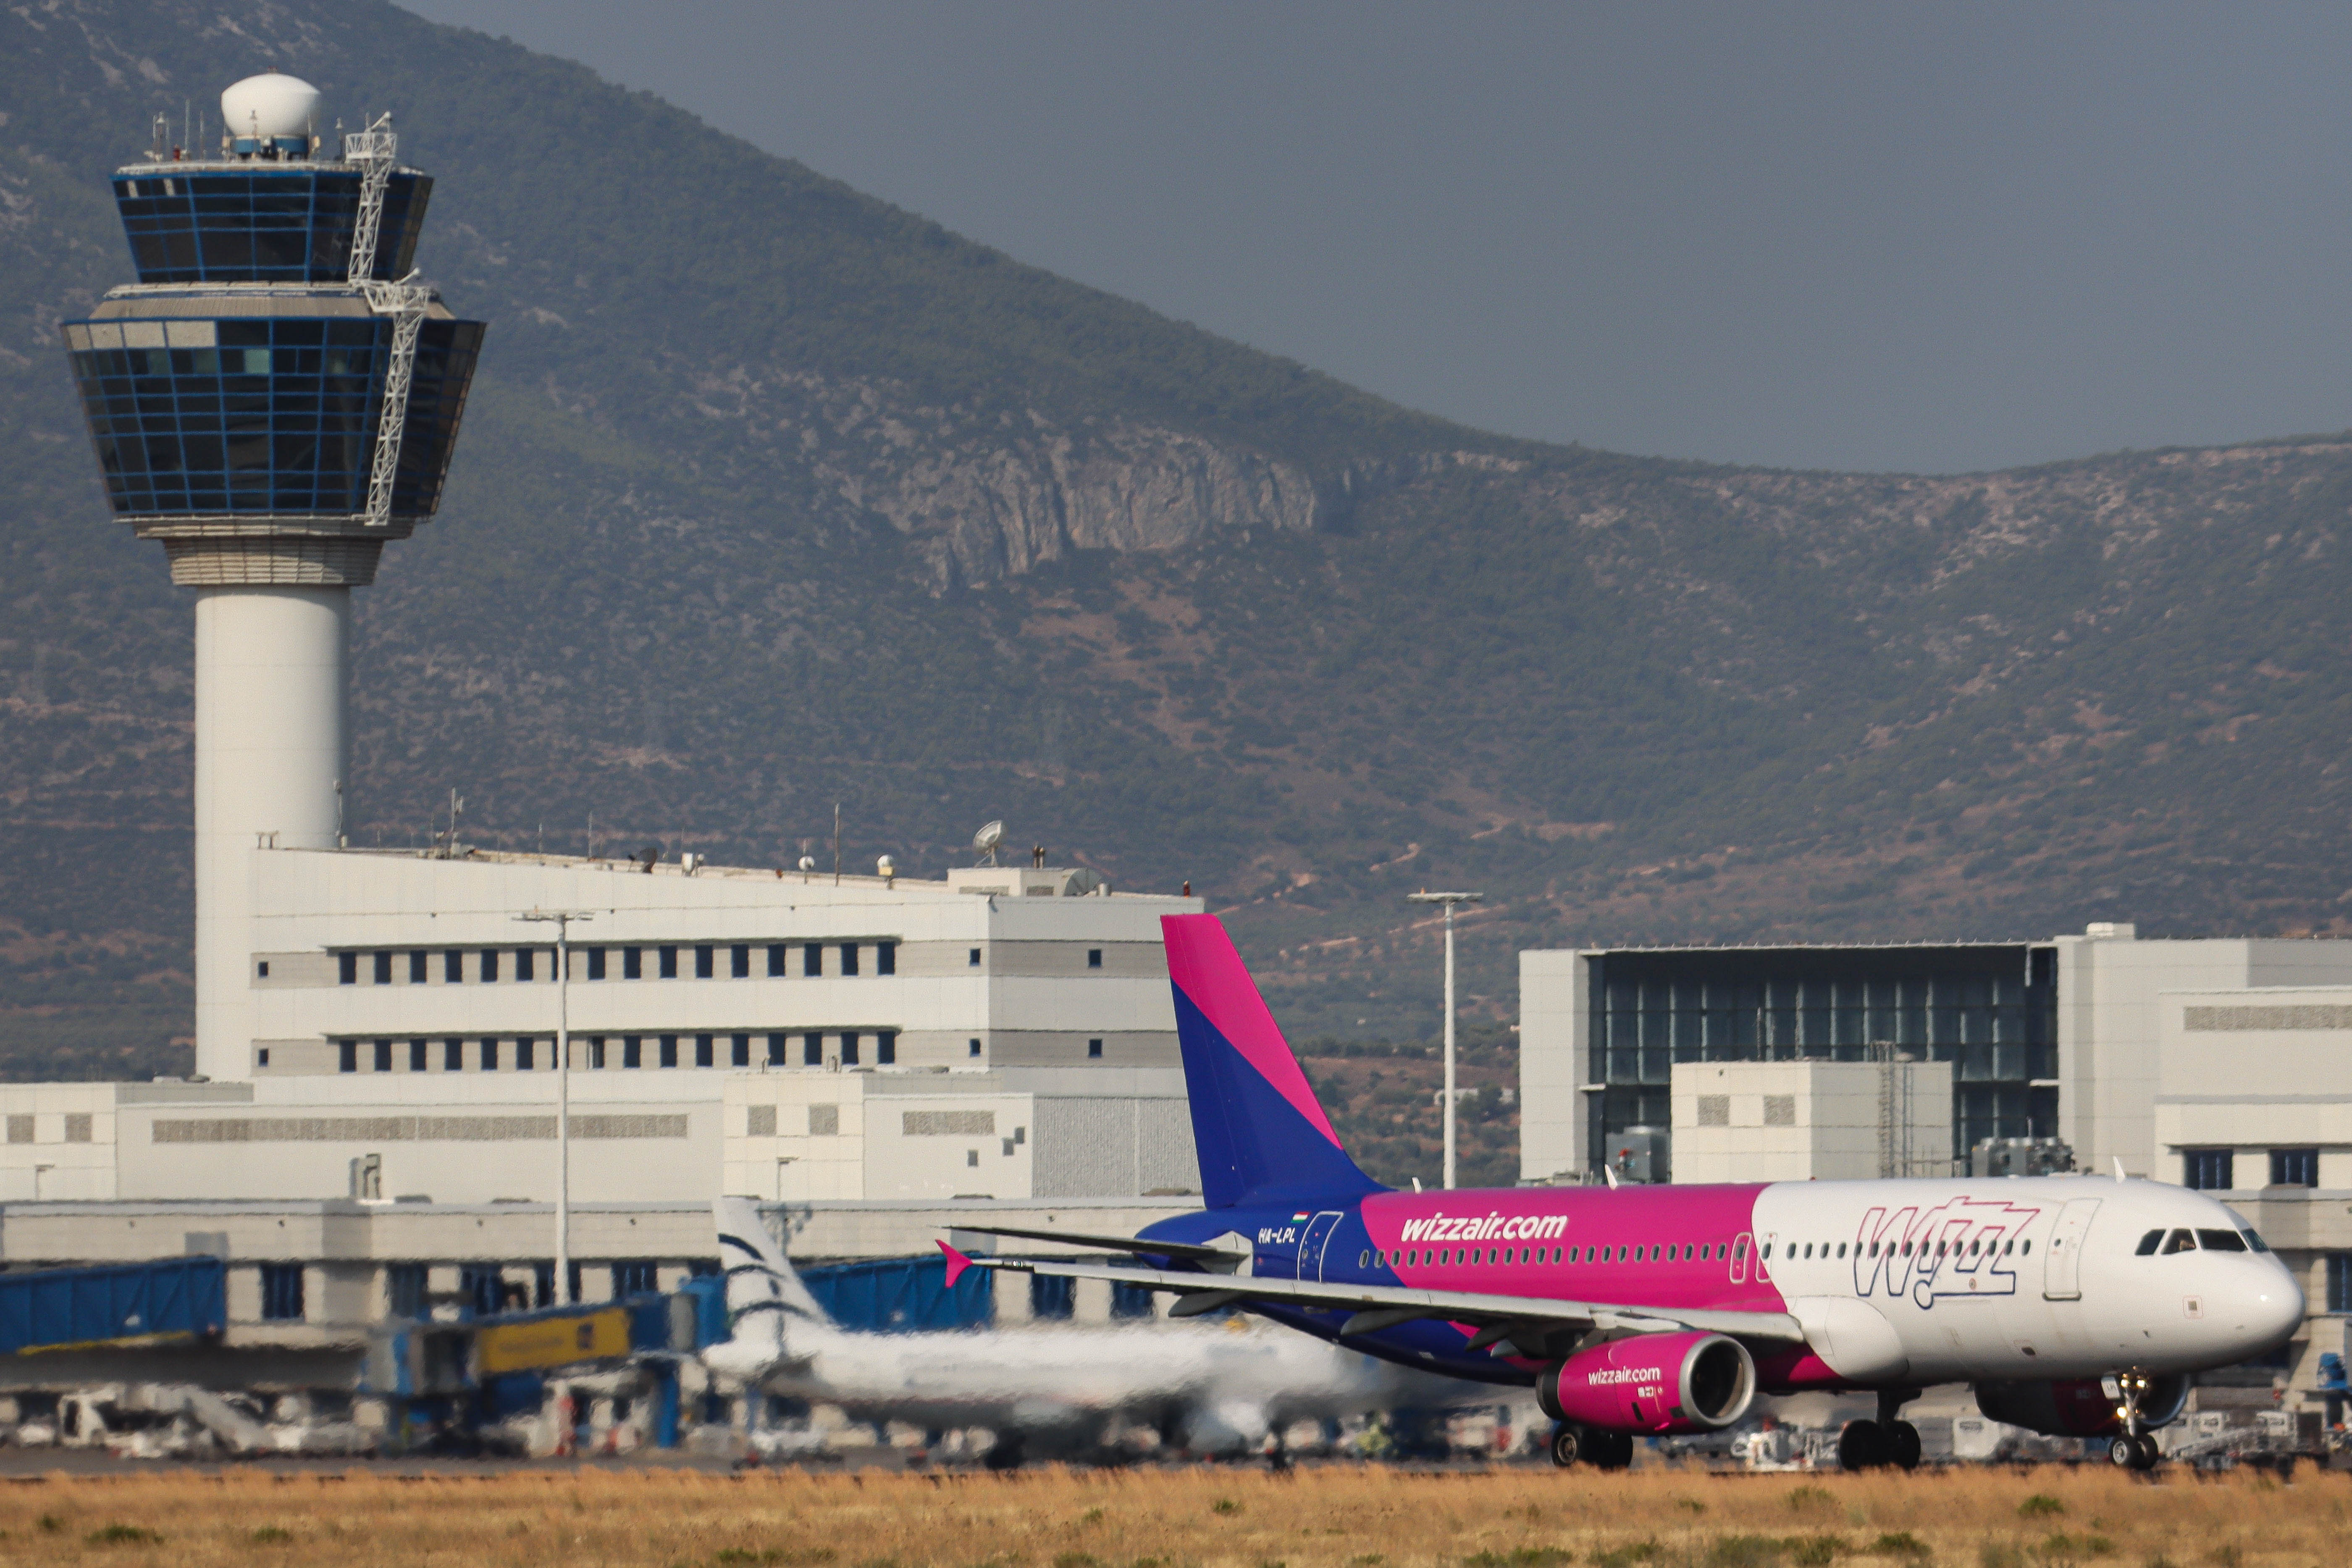 A Wizz Air a legrosszabb rövidtávú légitársaság a britek szerint